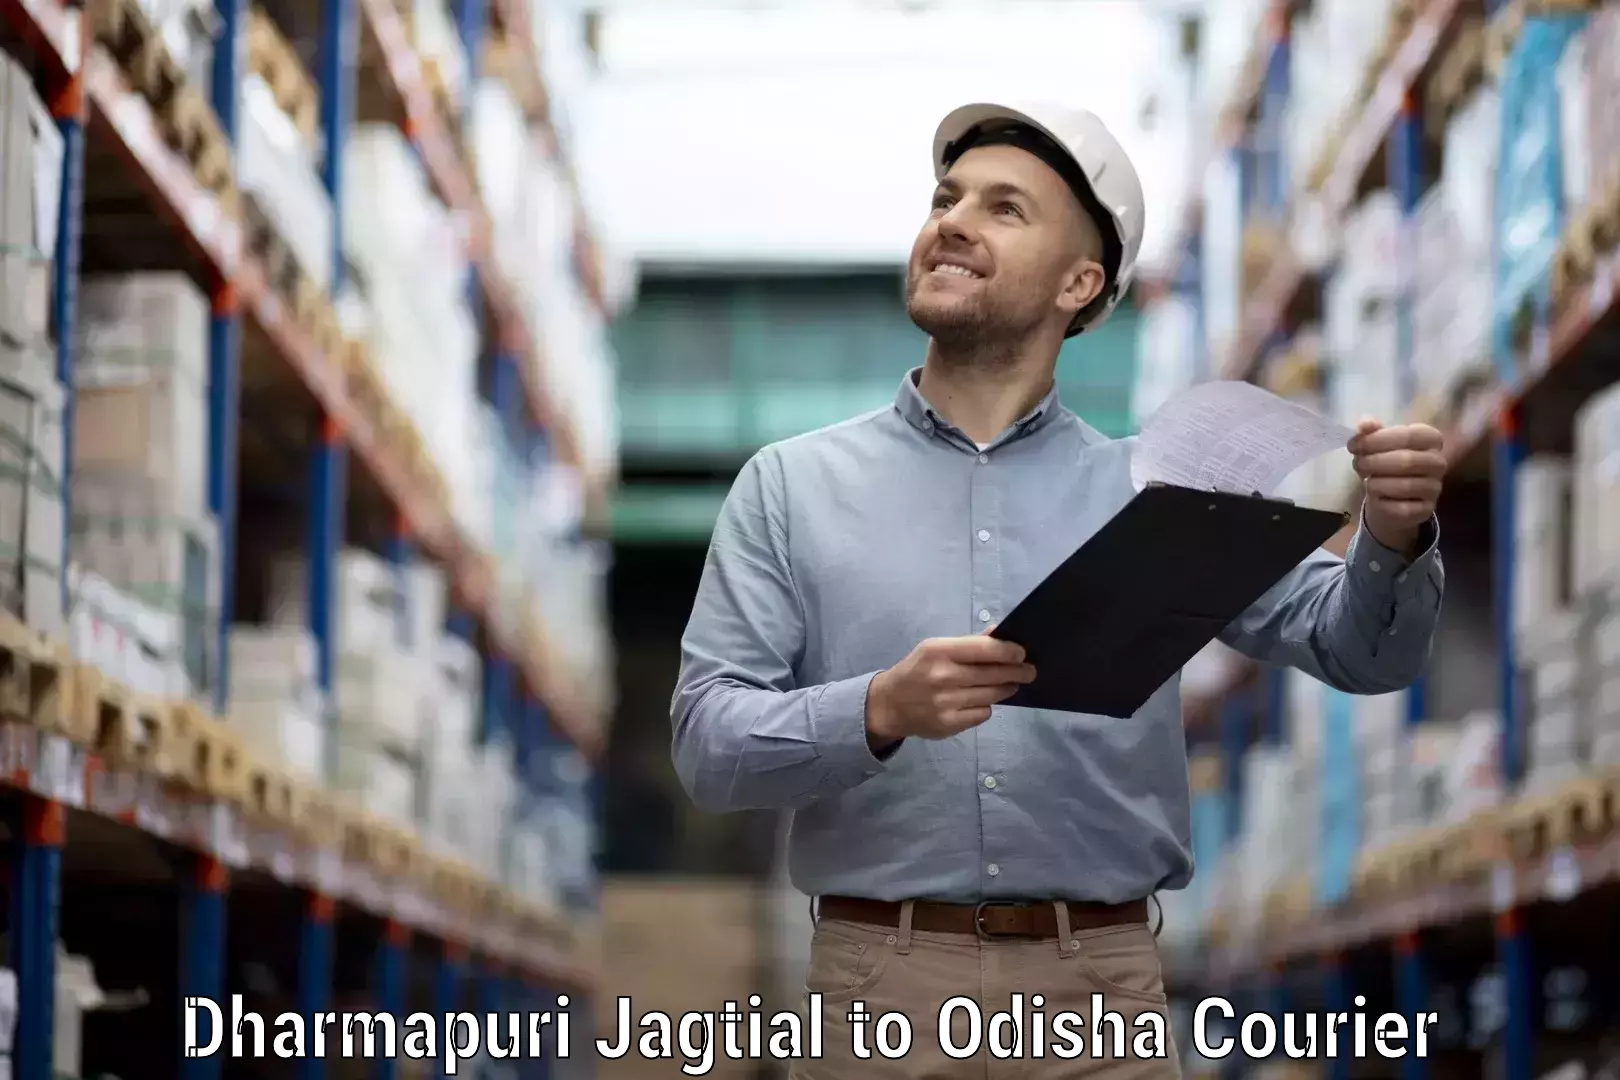 Customizable delivery plans in Dharmapuri Jagtial to Telkoi